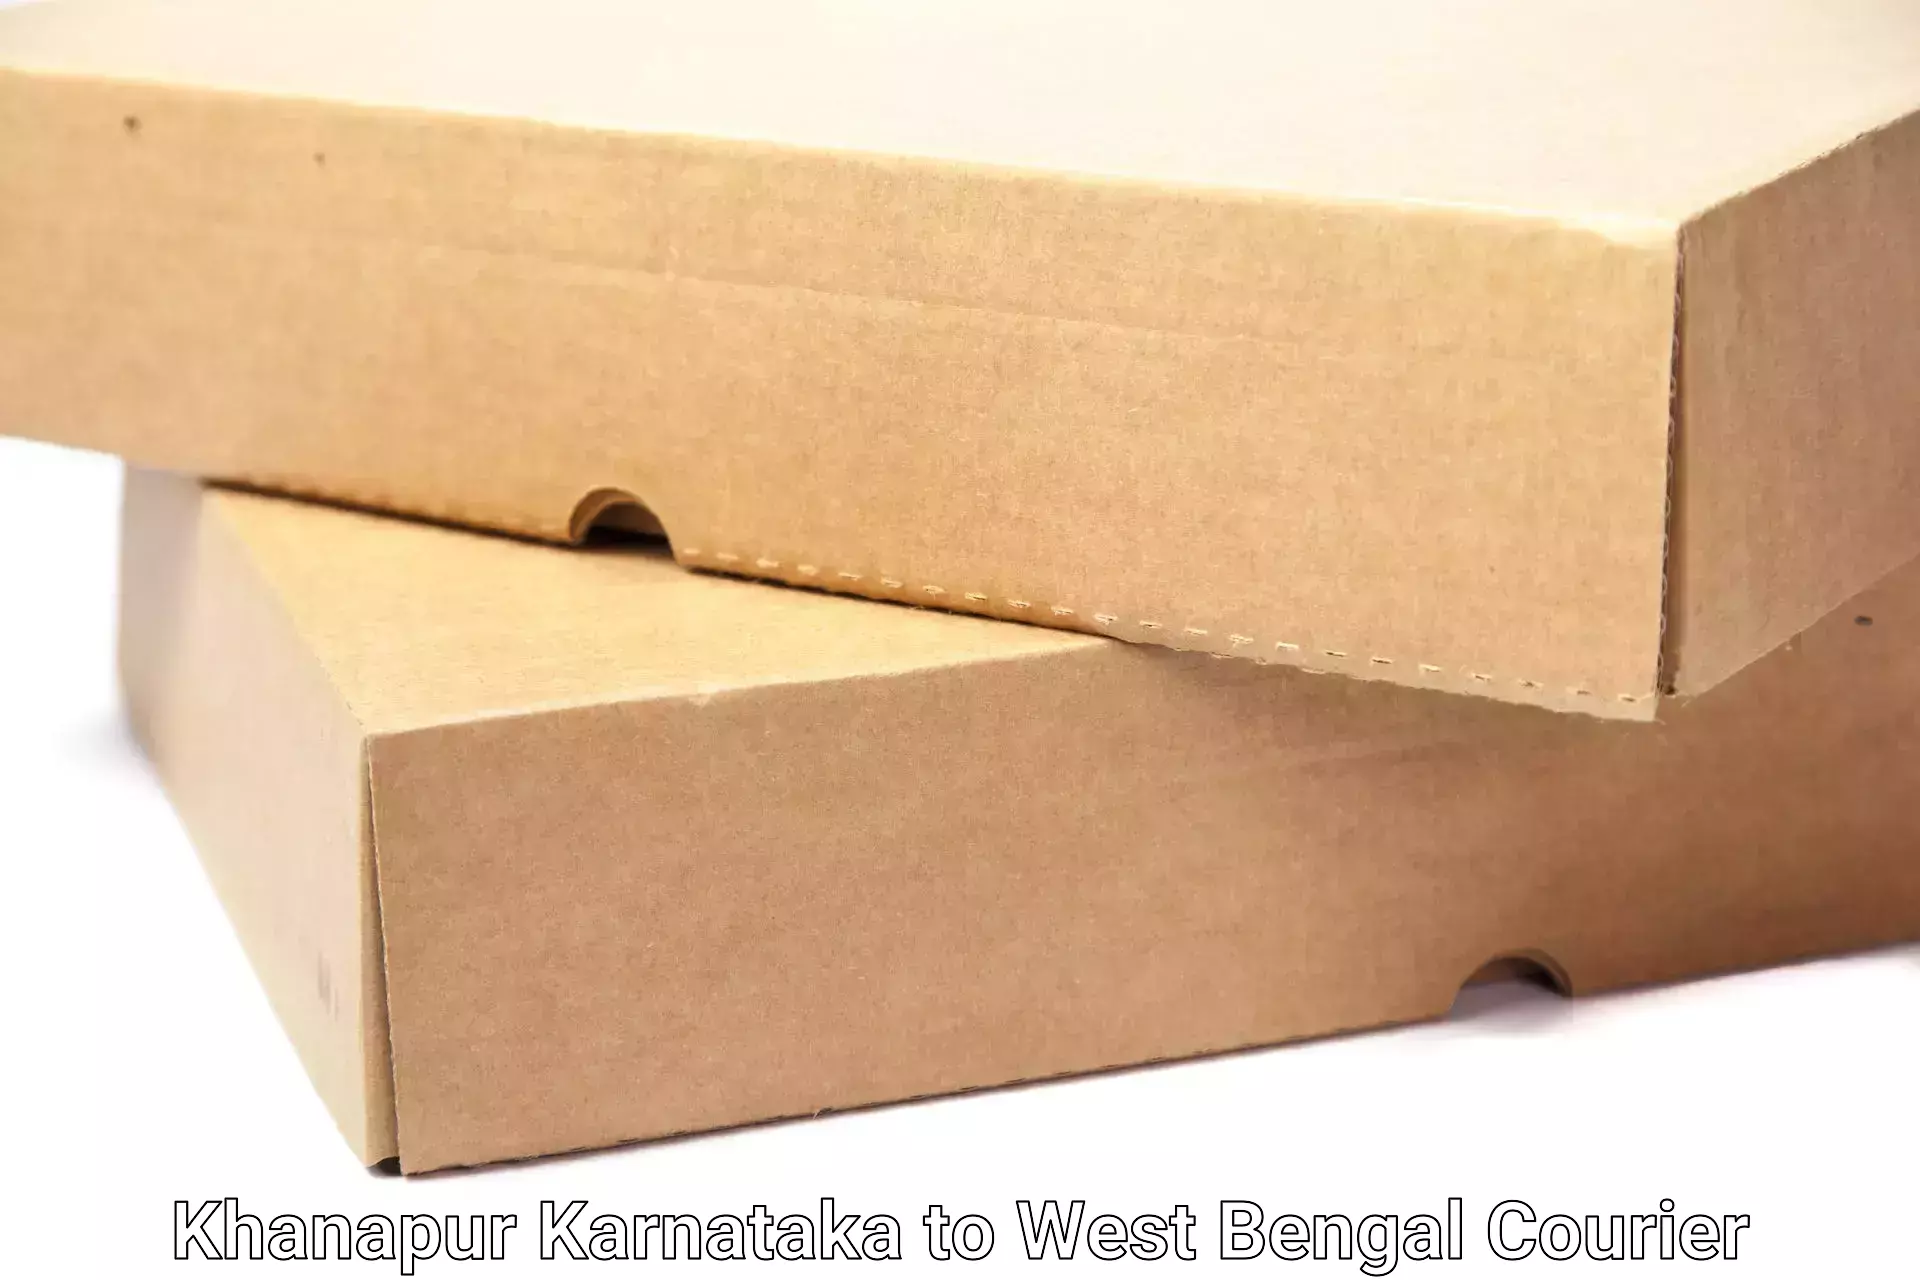 Stress-free furniture moving Khanapur Karnataka to West Bengal